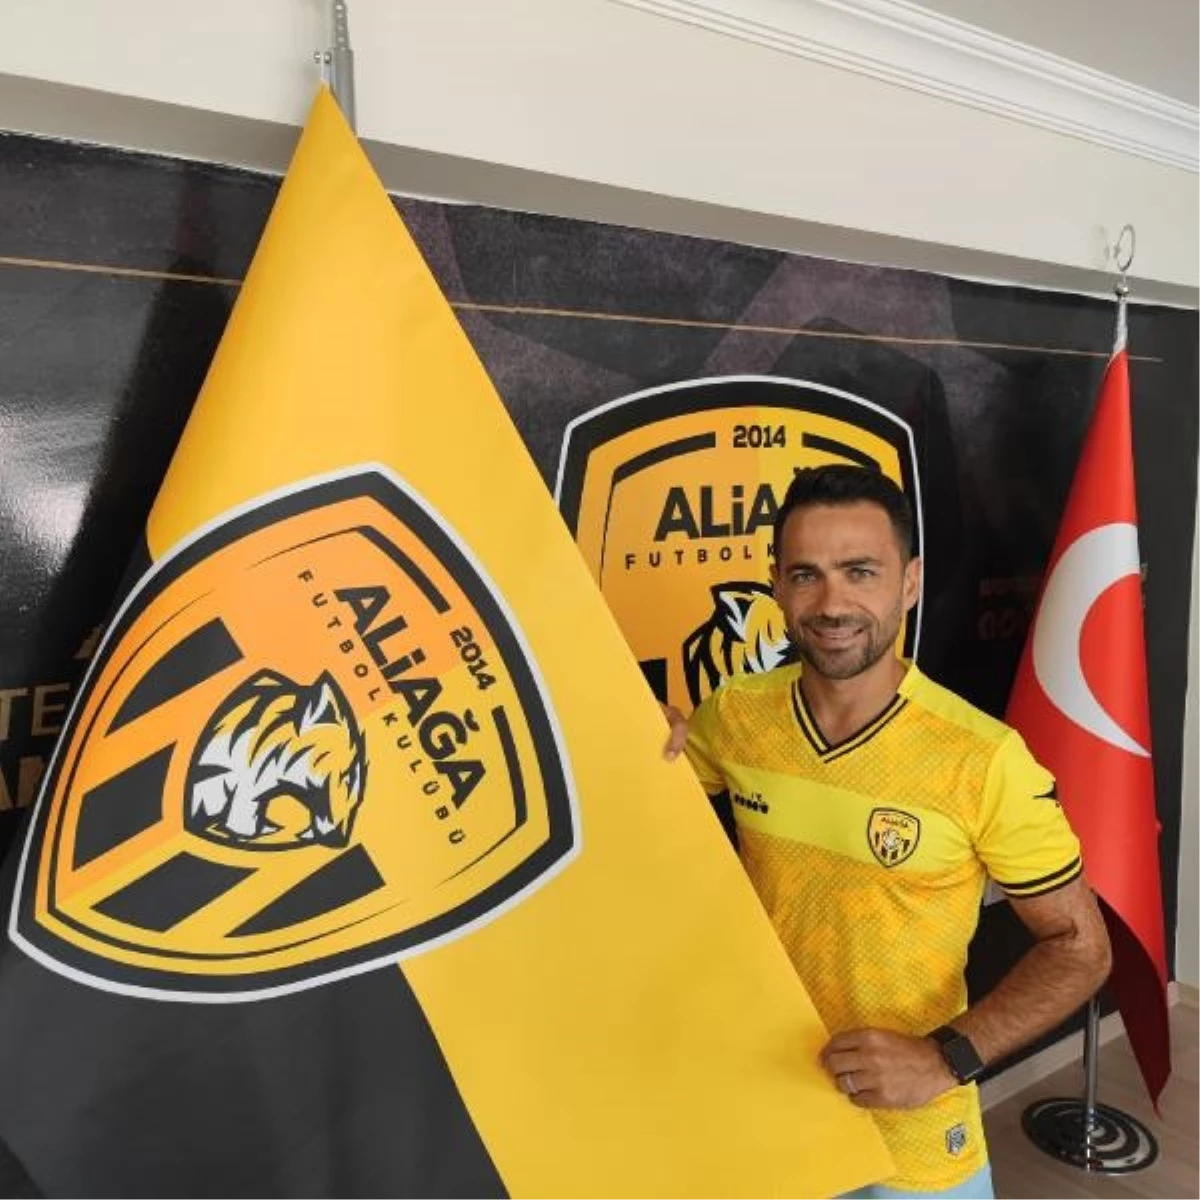 Aliağa Futbol Kulübü'nde kadro kaptanı Mithat Yaşar ile kontrat yenilendi